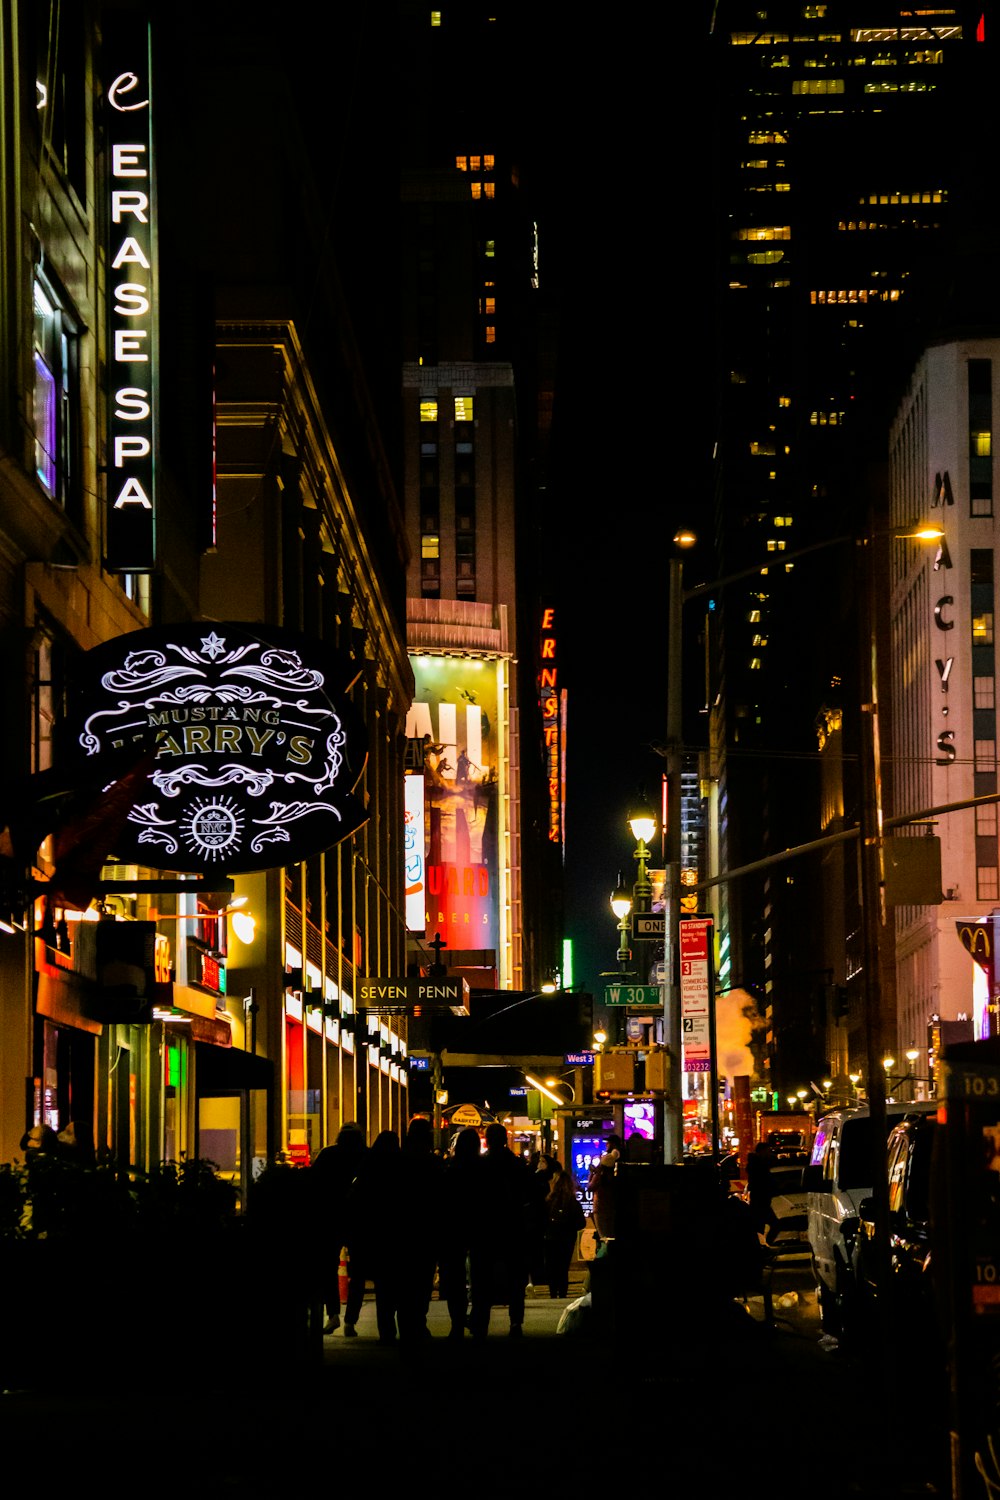 Una strada trafficata della città di notte con insegne al neon